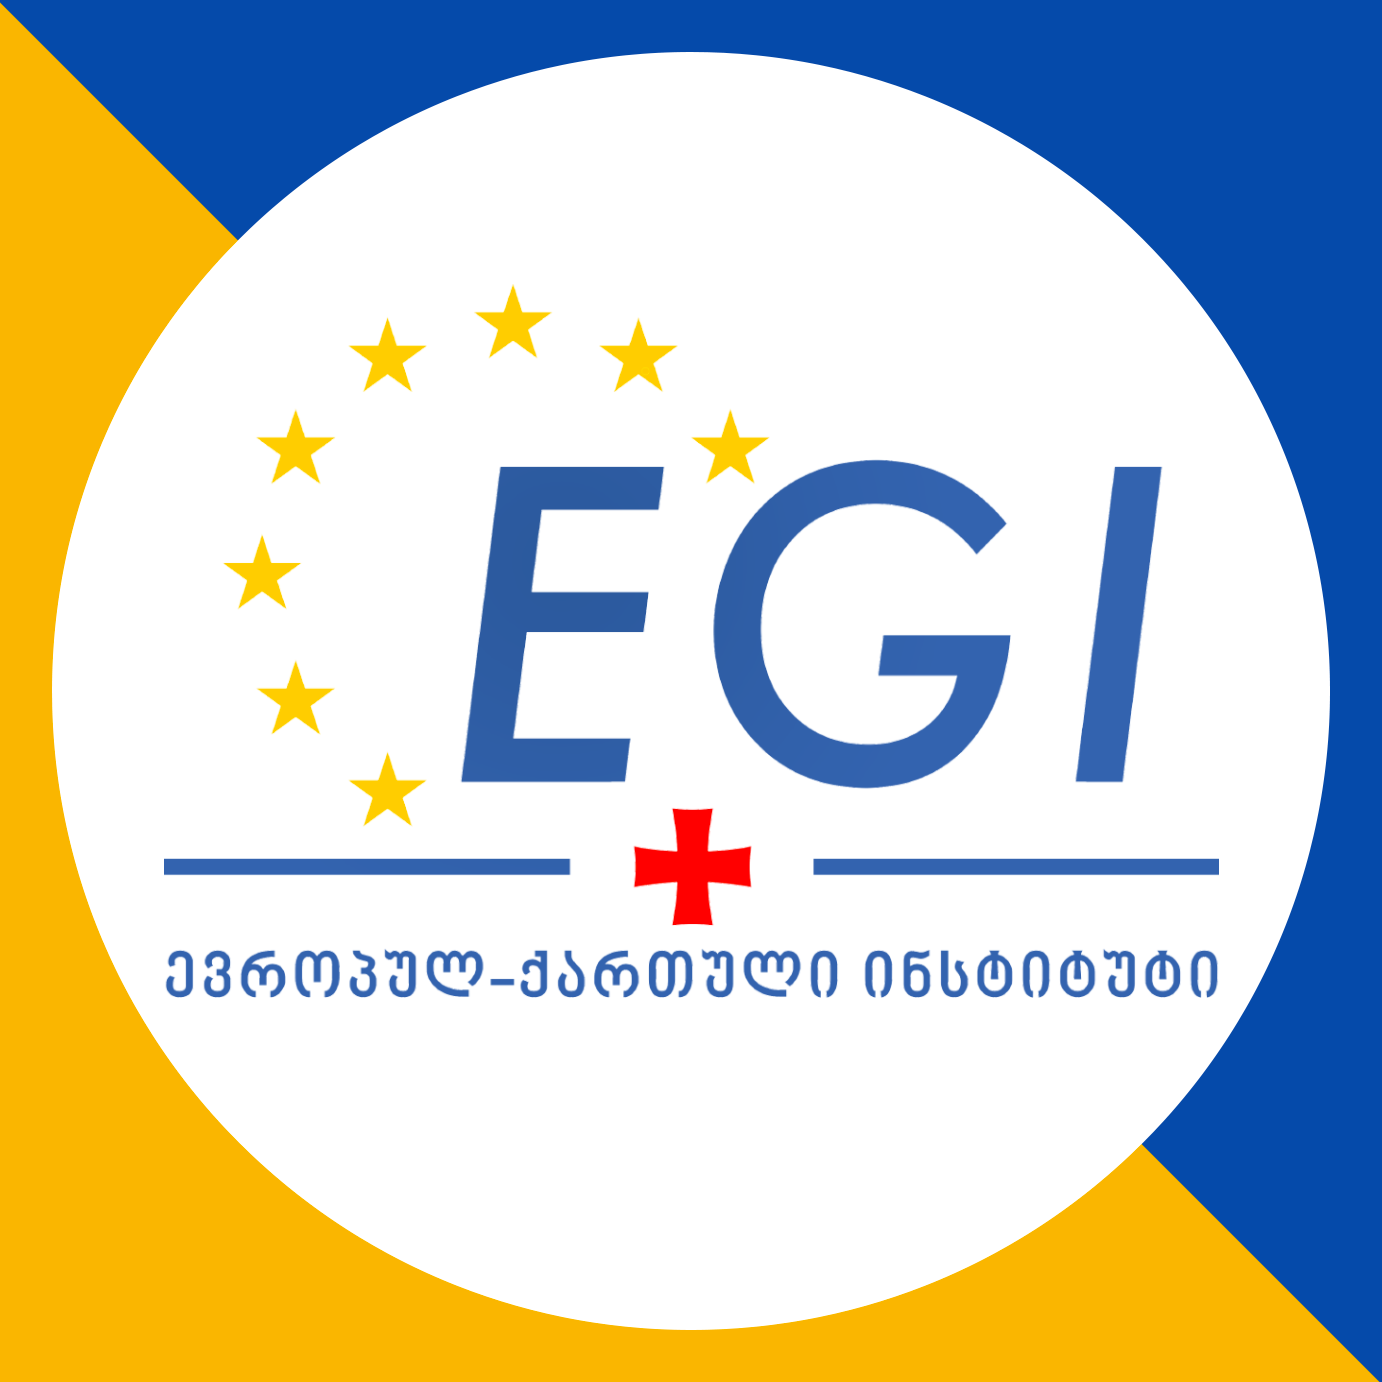  Europe-Georgia Institute